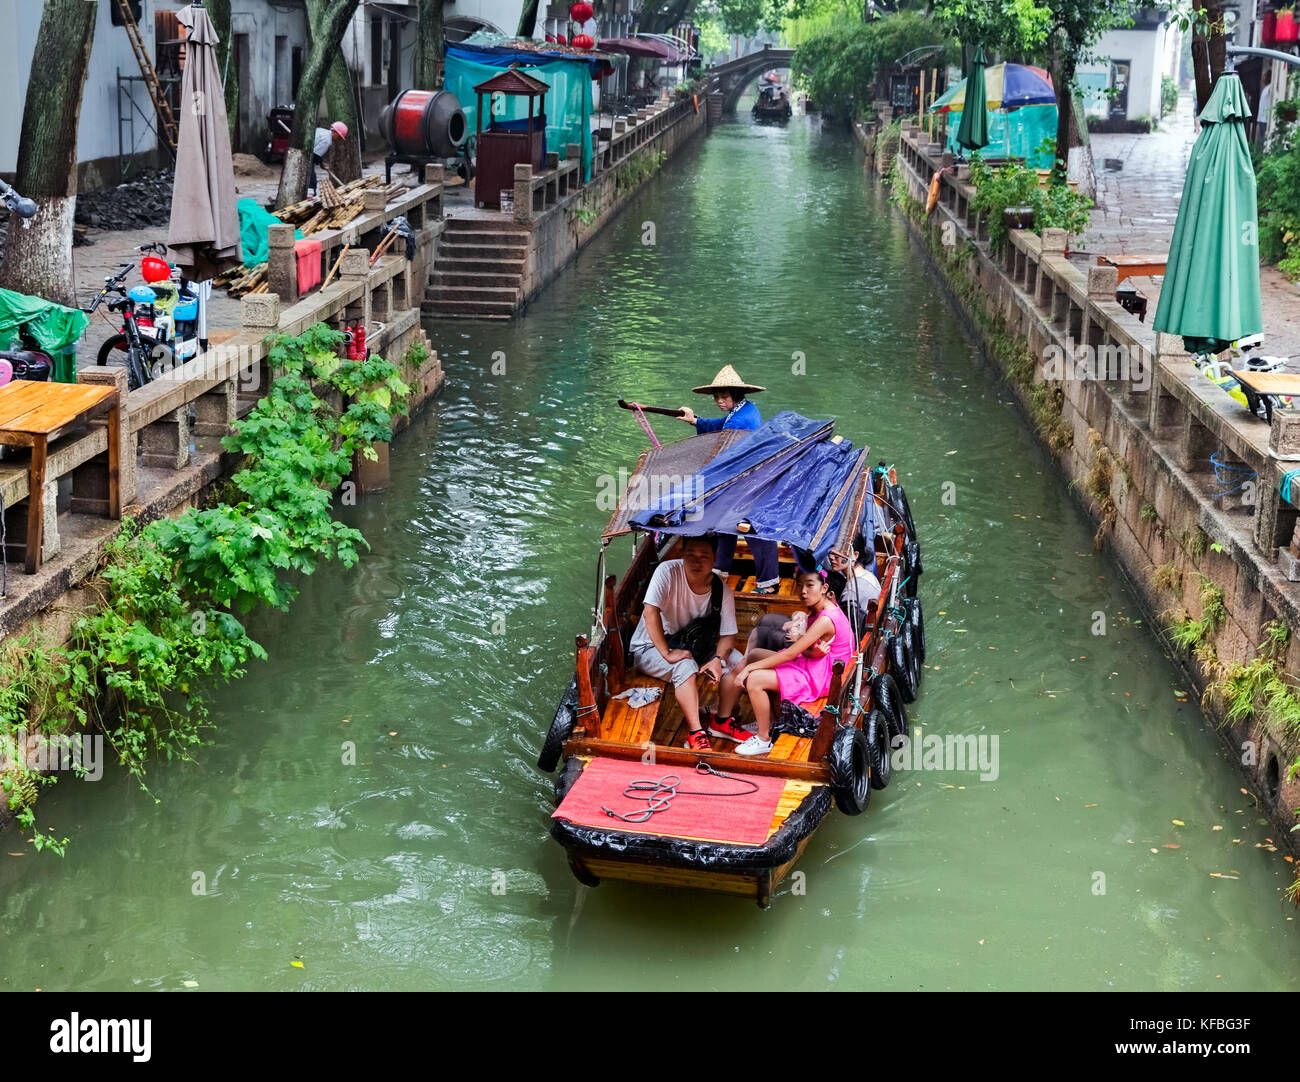 Tongli, la città di acqua in Cina (Venezia di Asia) è una famosa e bella città in Cina per molti turisti venuti a vedere la città vecchia e il tradizionale c Foto Stock